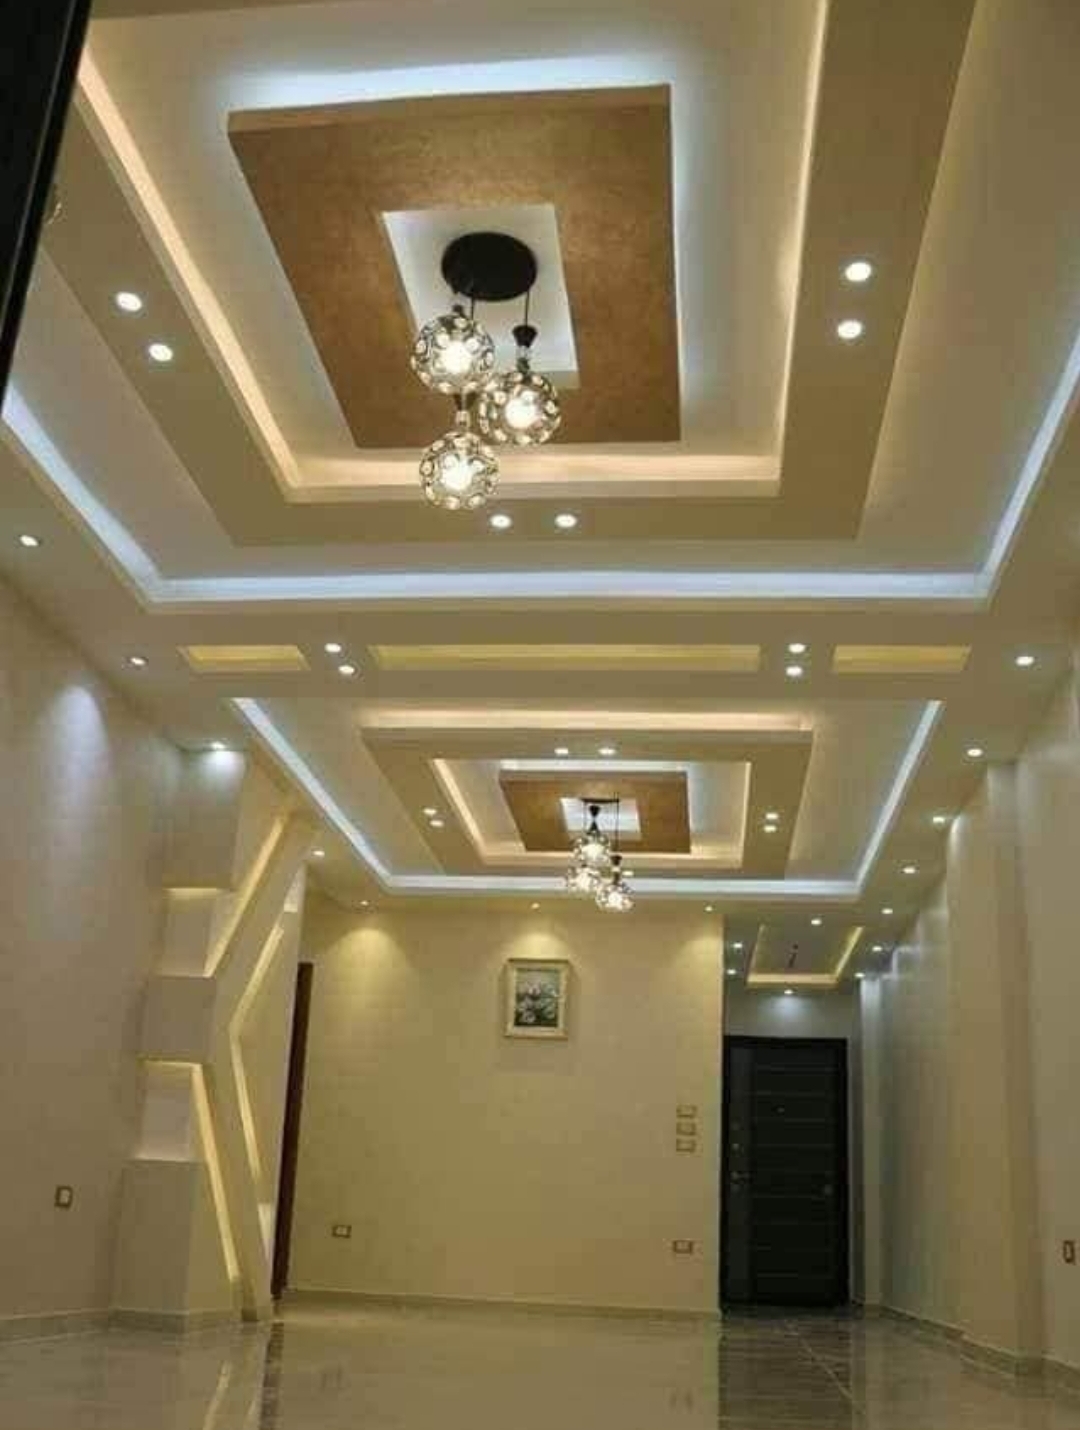 False ceiling # gypsum bod ceiling design # ceiling design # livingroom ceiling design # 